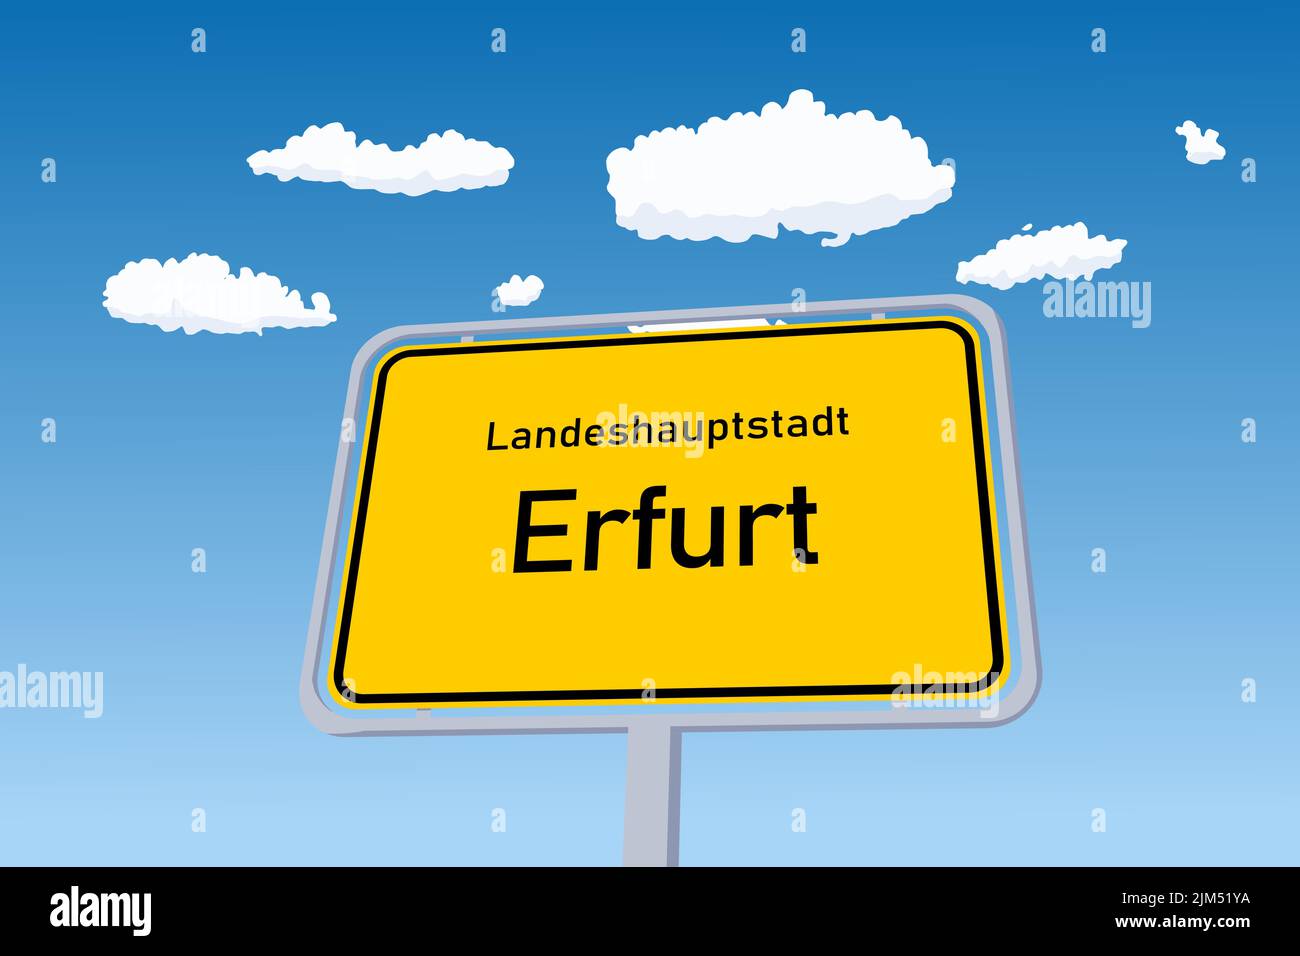 Señal de la ciudad de Erfurt en Alemania. Señal de tráfico de bienvenida de límite de ciudad. Landeshauptstadt significa Capital del Estado en alemán. Ilustración del Vector